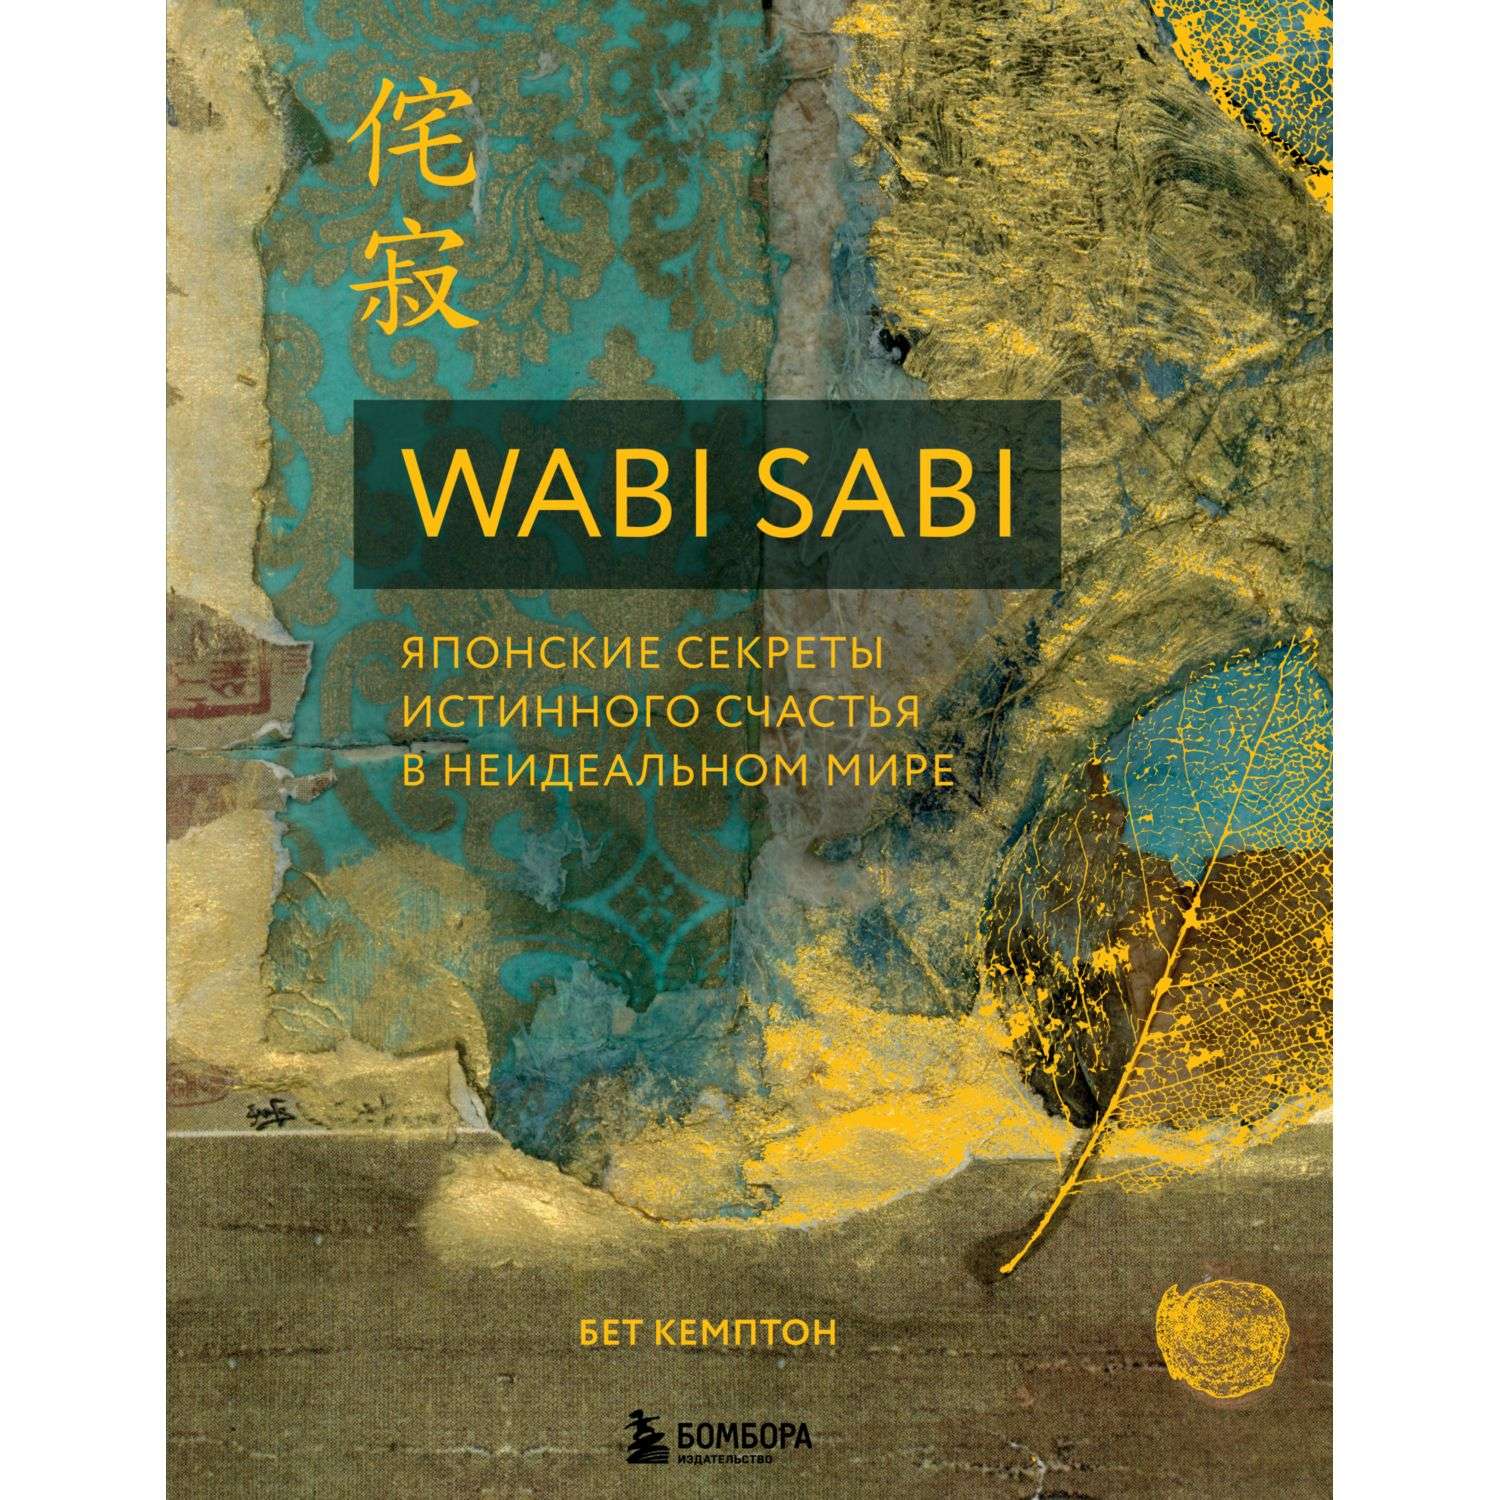 Книга БОМБОРА Wabi Sabi Японские секреты истинного счастья в неидеальном мире - фото 3